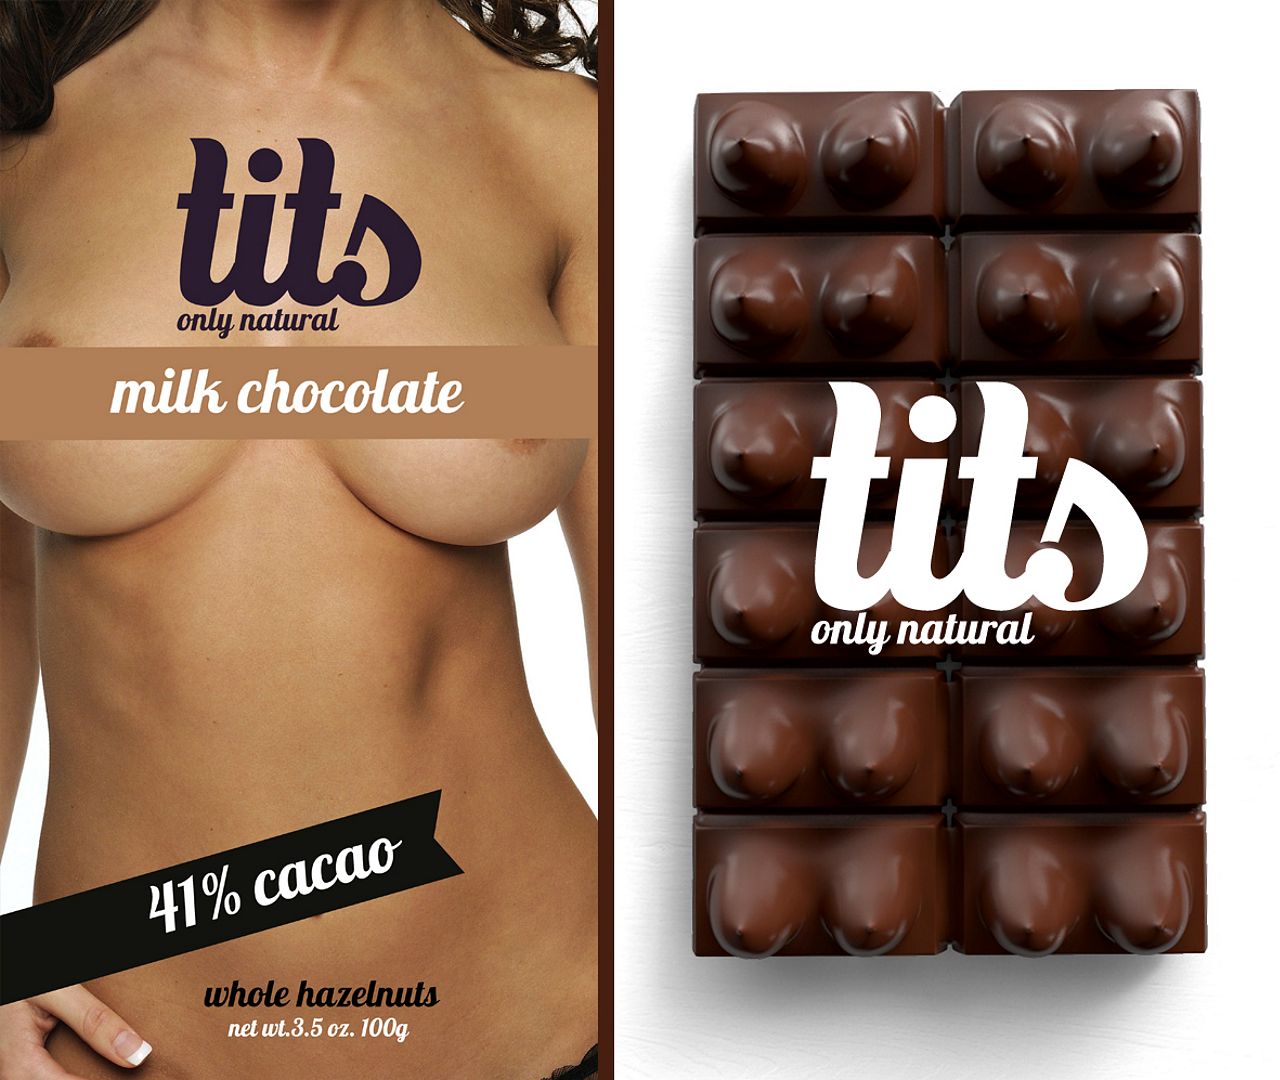 только натуральные сиськи! реклама молочного шоколада, эротика в рекламе, креатив фото